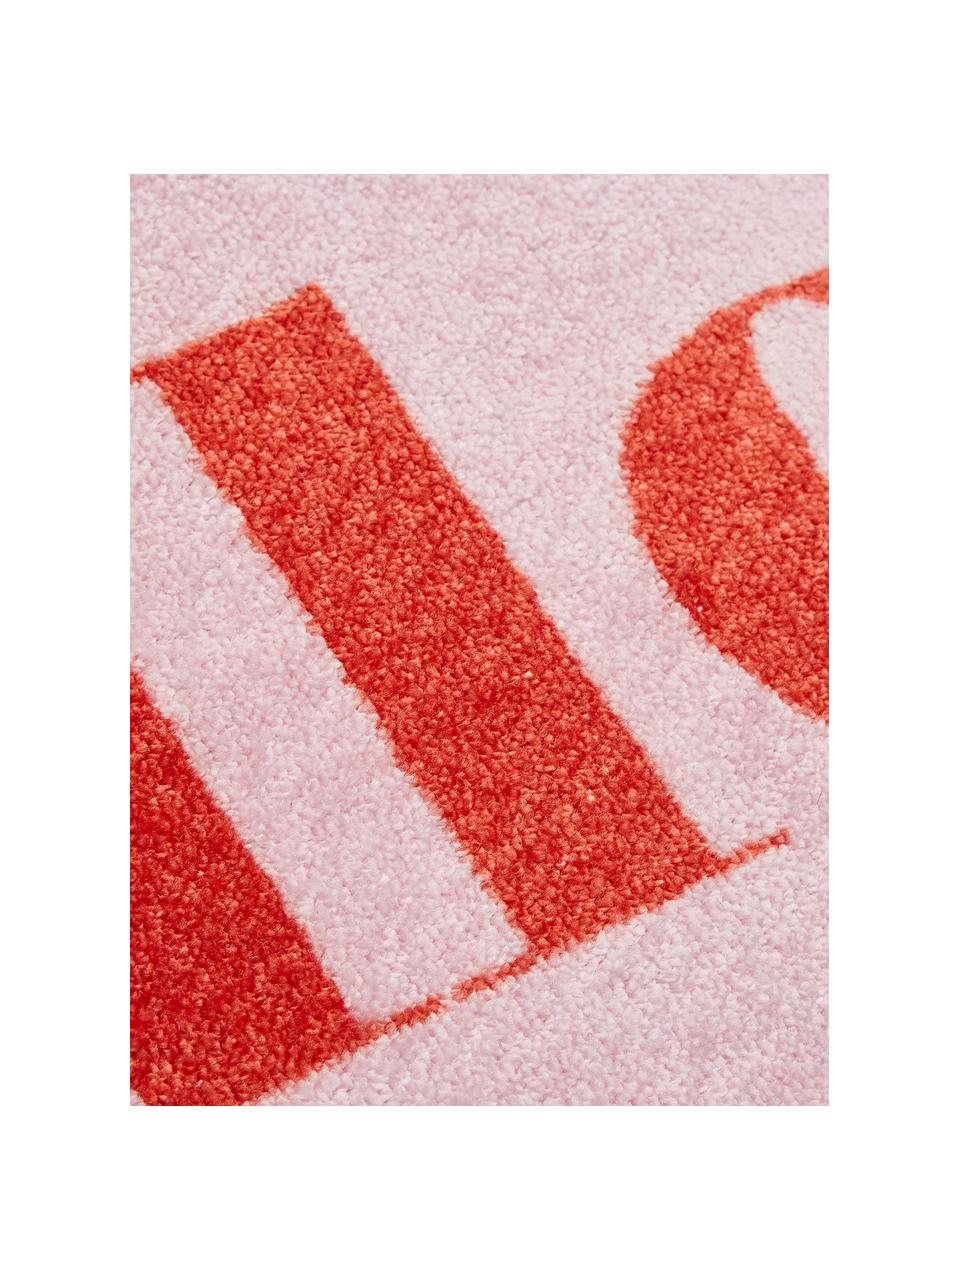 Leicht glänzende Polyamid-Fussmatte Perla, waschbar, Vorderseite: Polyamid, Rückseite: Kunststoff, Pink, 50 x 75 cm